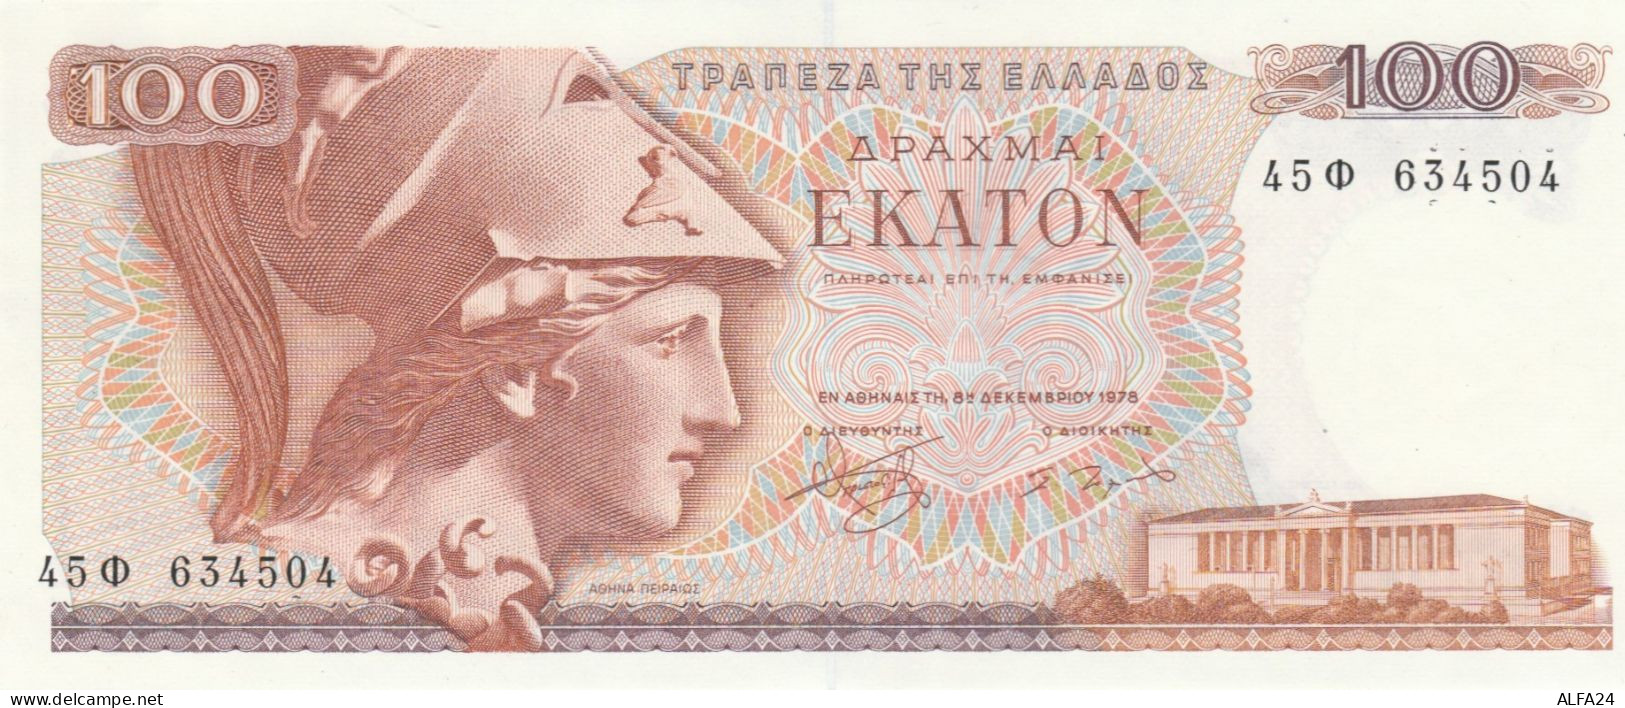 BANCONOTA GRECIA 100 UNC (RY2682 - Grecia